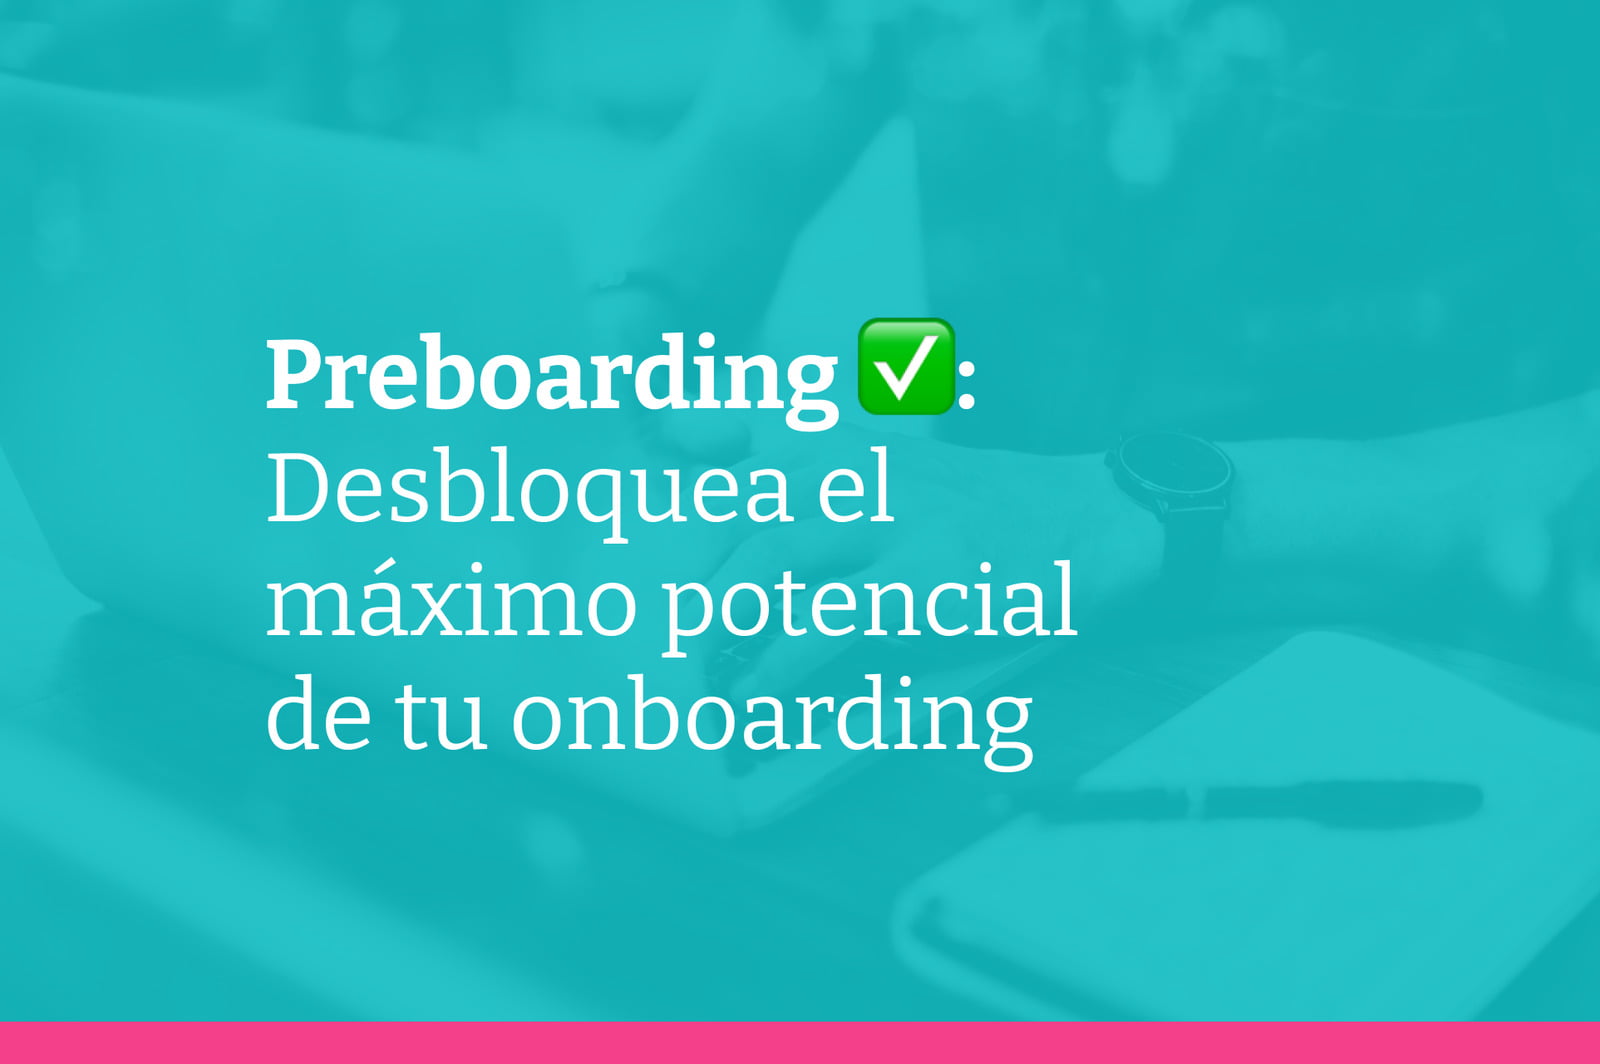 Preboarding: la fase que maximiza el potencial de tu onboarding